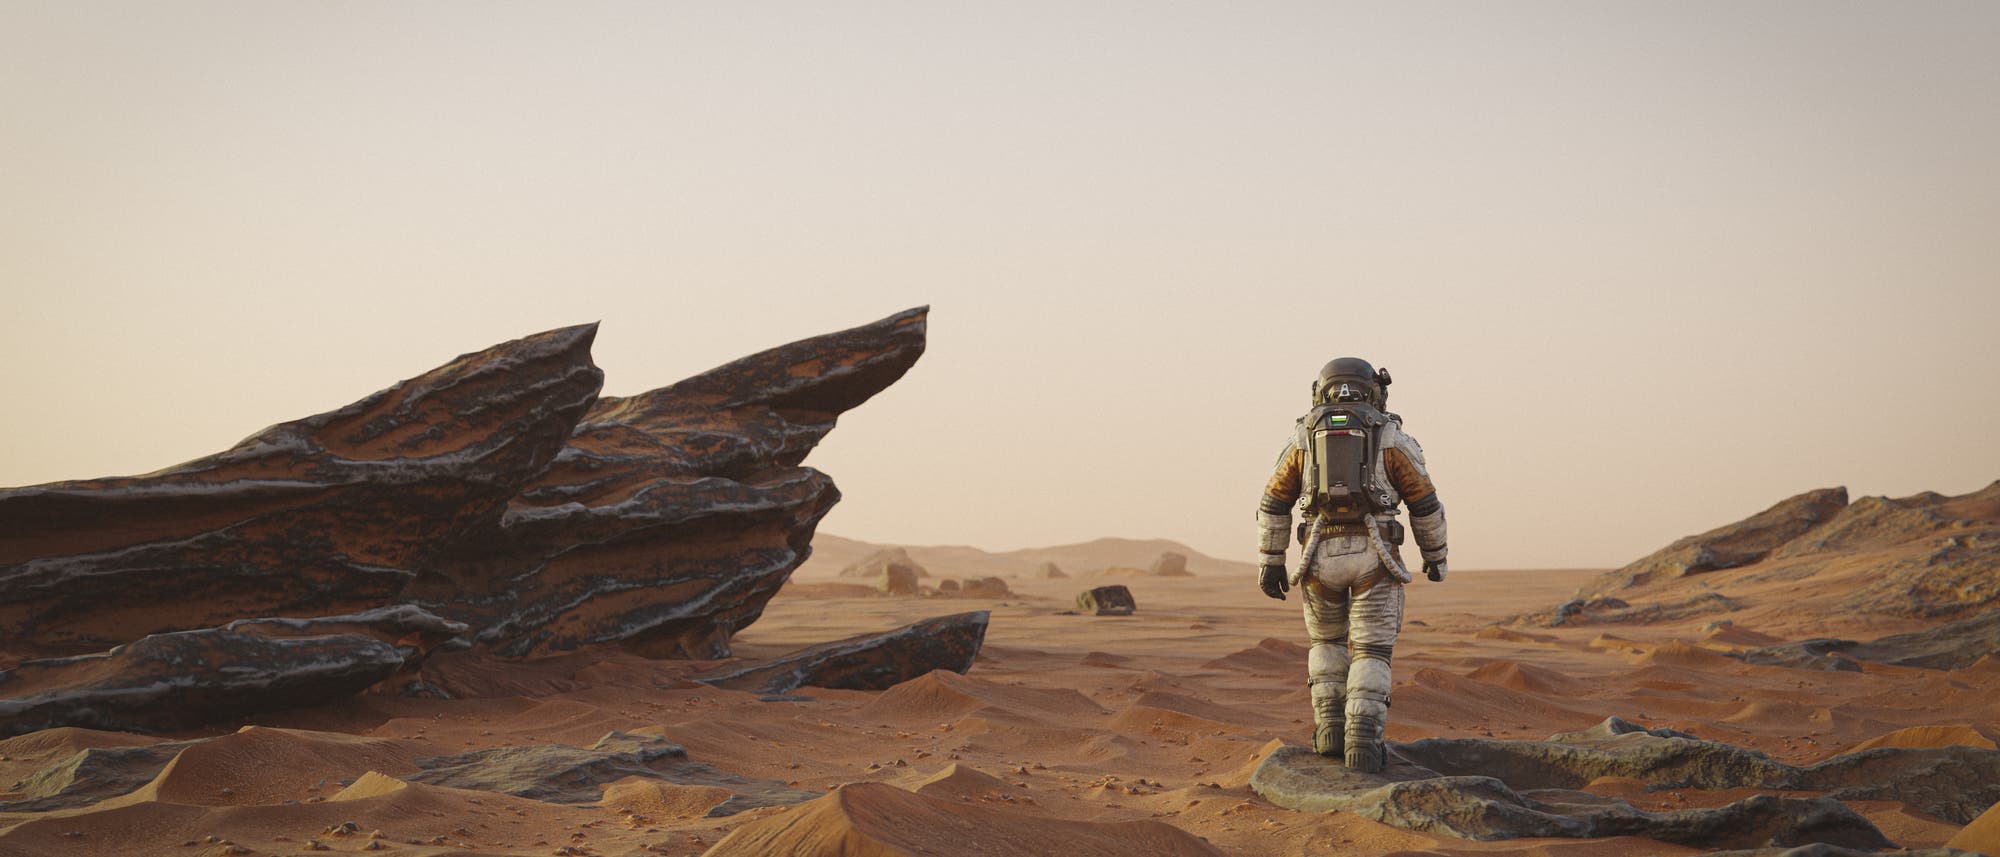 Illustration eines Astronauten oder einer Astronautin von hinten auf einem Wüstenplaneten mit rötlichem Sand und schwarzen Felsen. Der Himmel ist dunstig